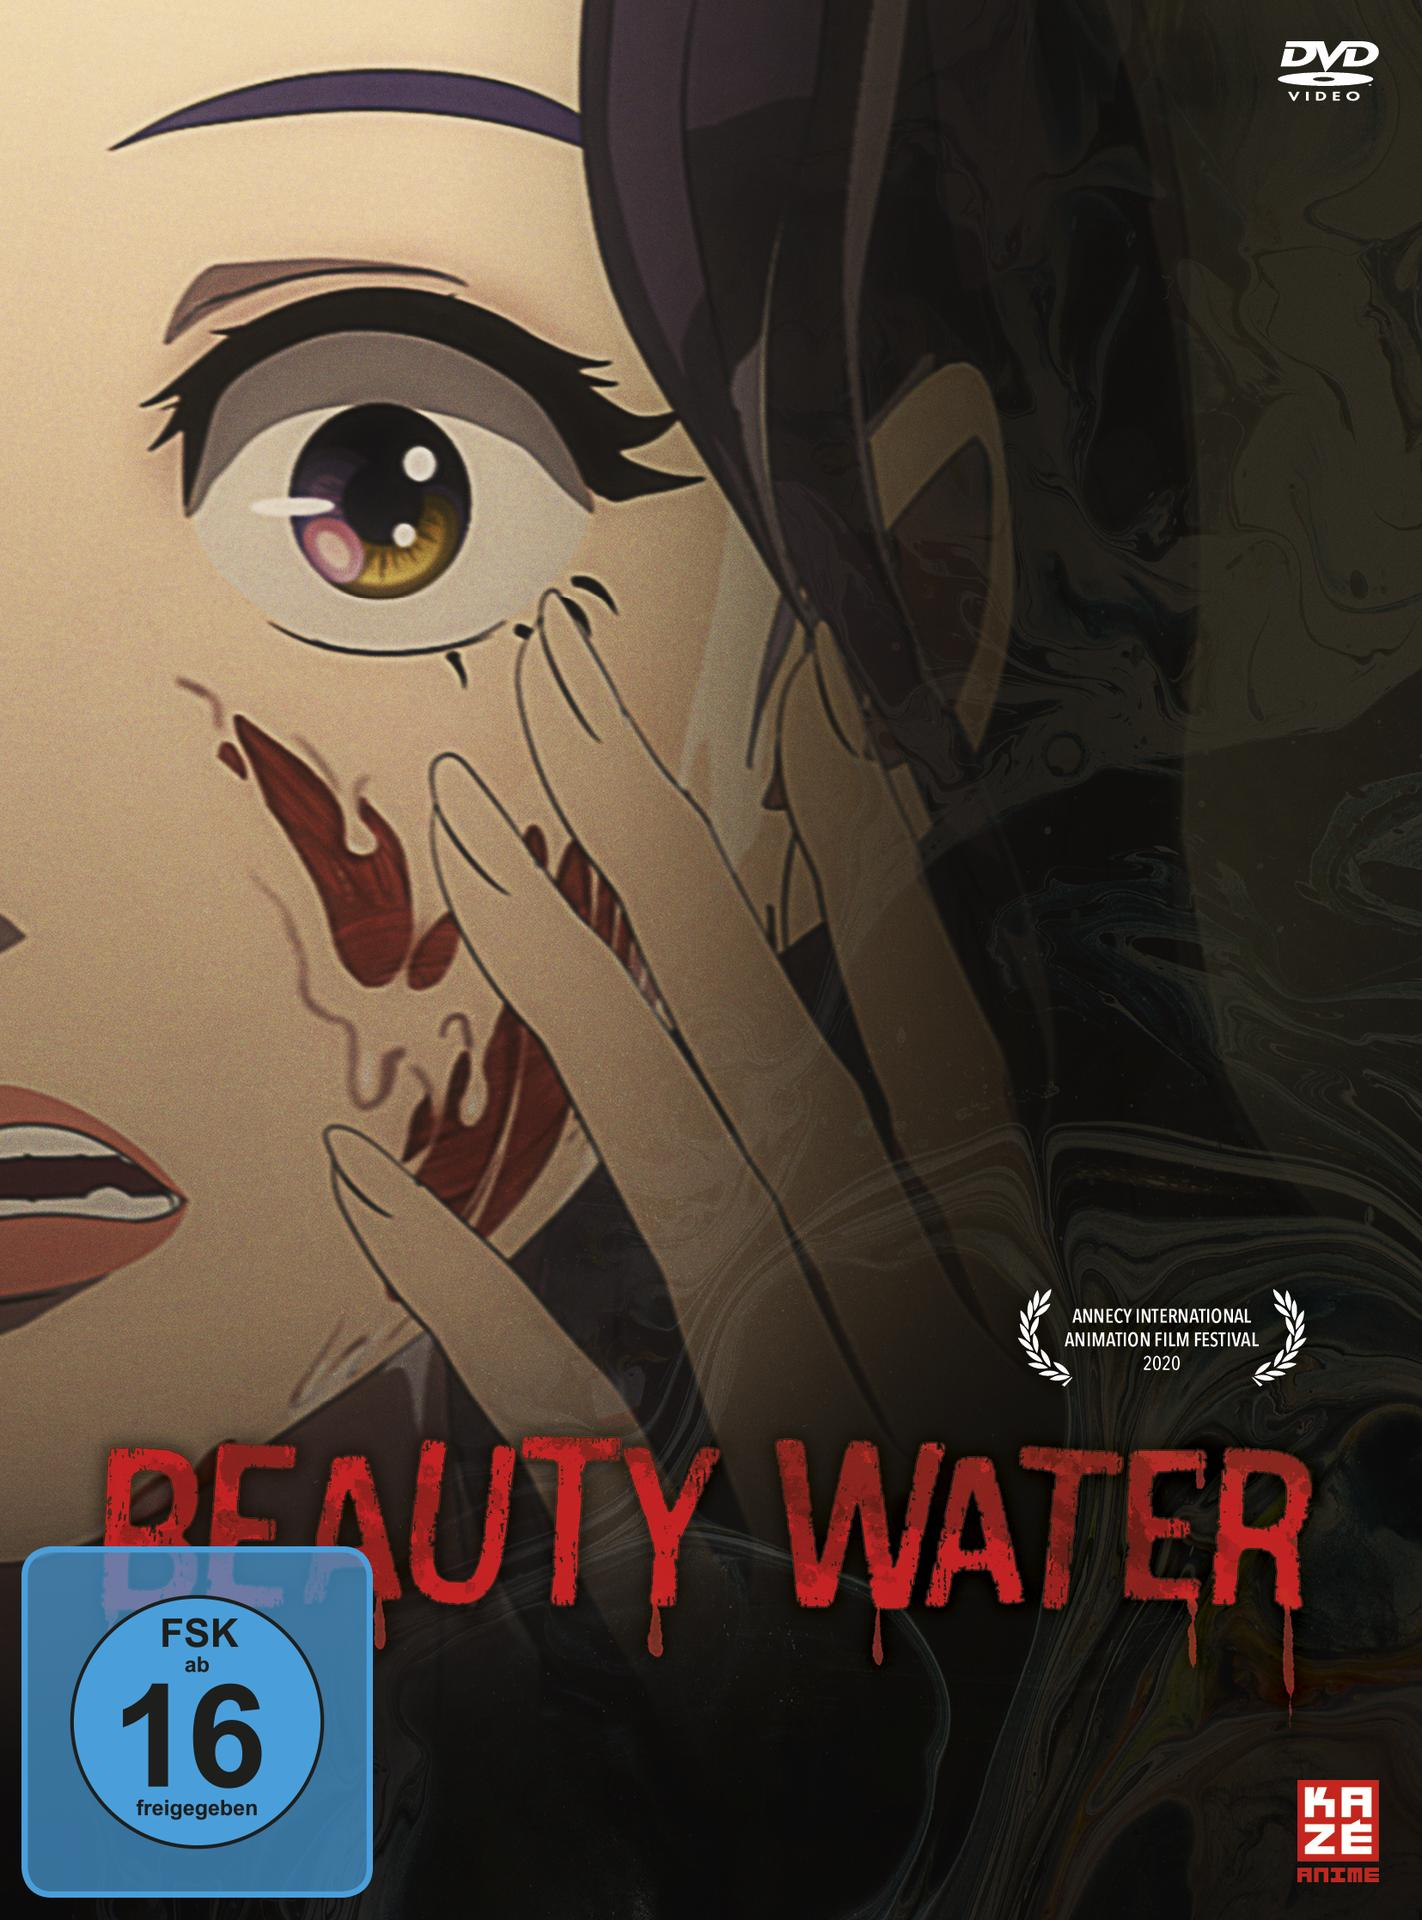 DVD Water Beauty